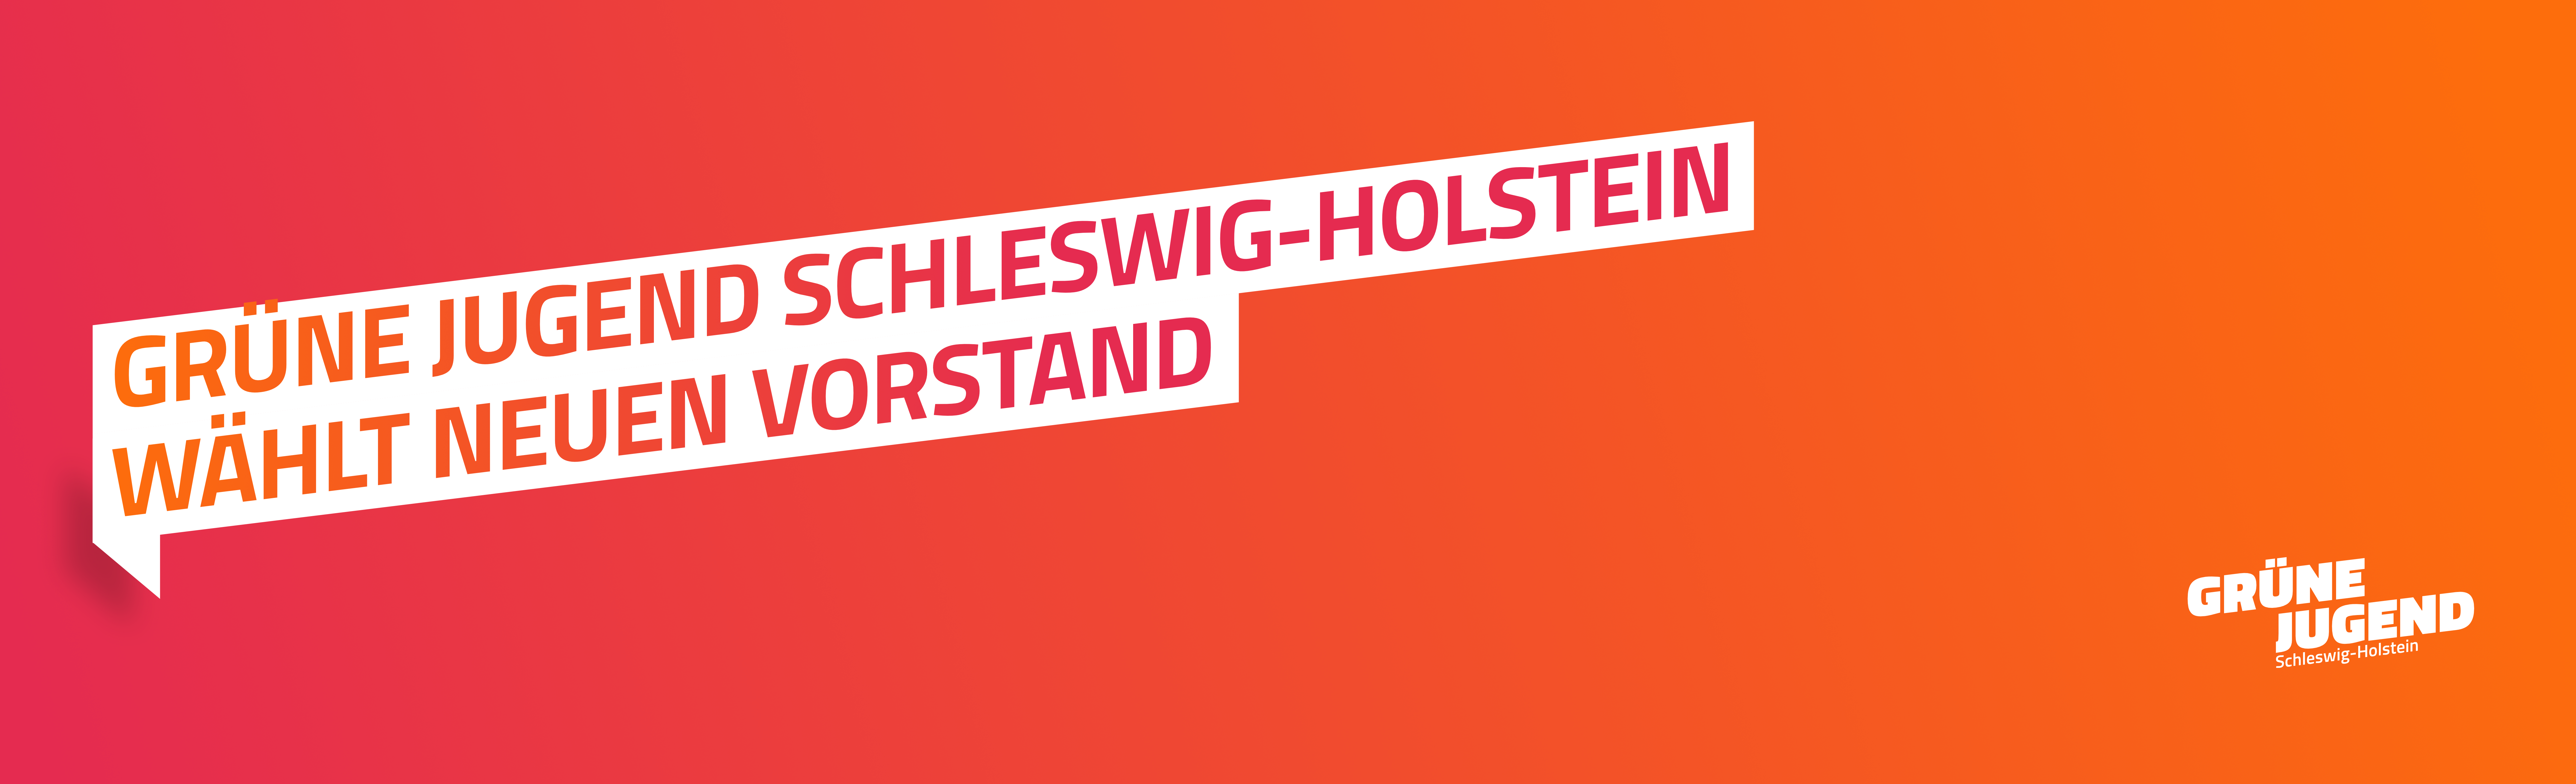 Grüne Jugend Schleswig-Holstein wählt neuen Vorstand